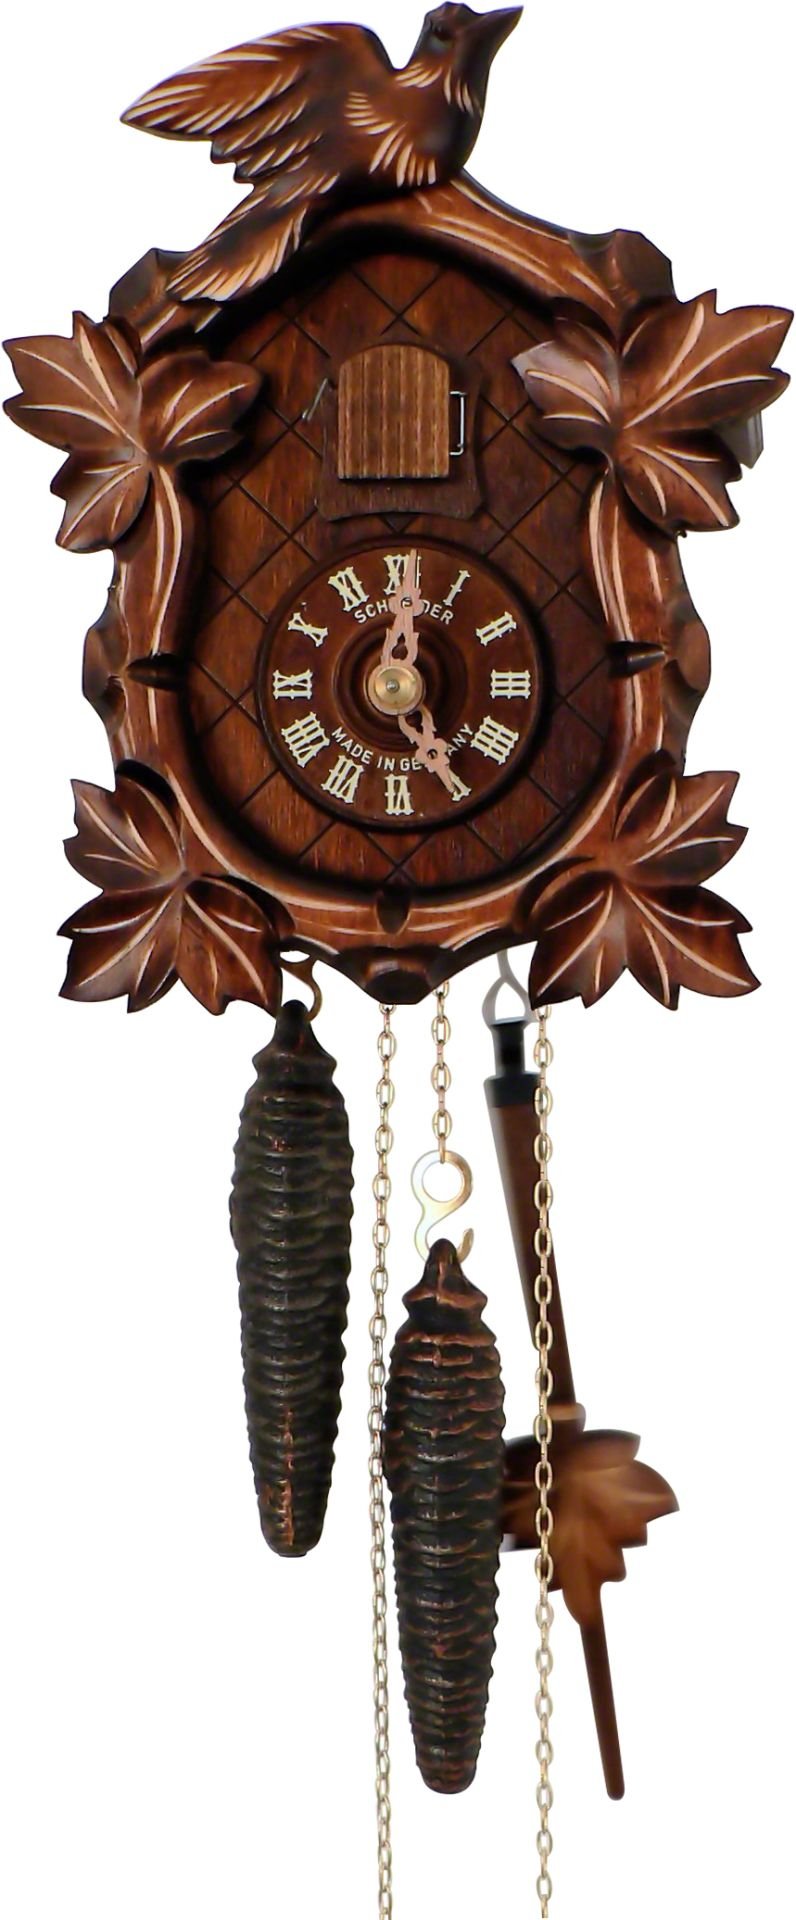 Reloj de cuco estilo “Madera tallada” movimiento mecánico de 1 día 20cm de Anton Schneider